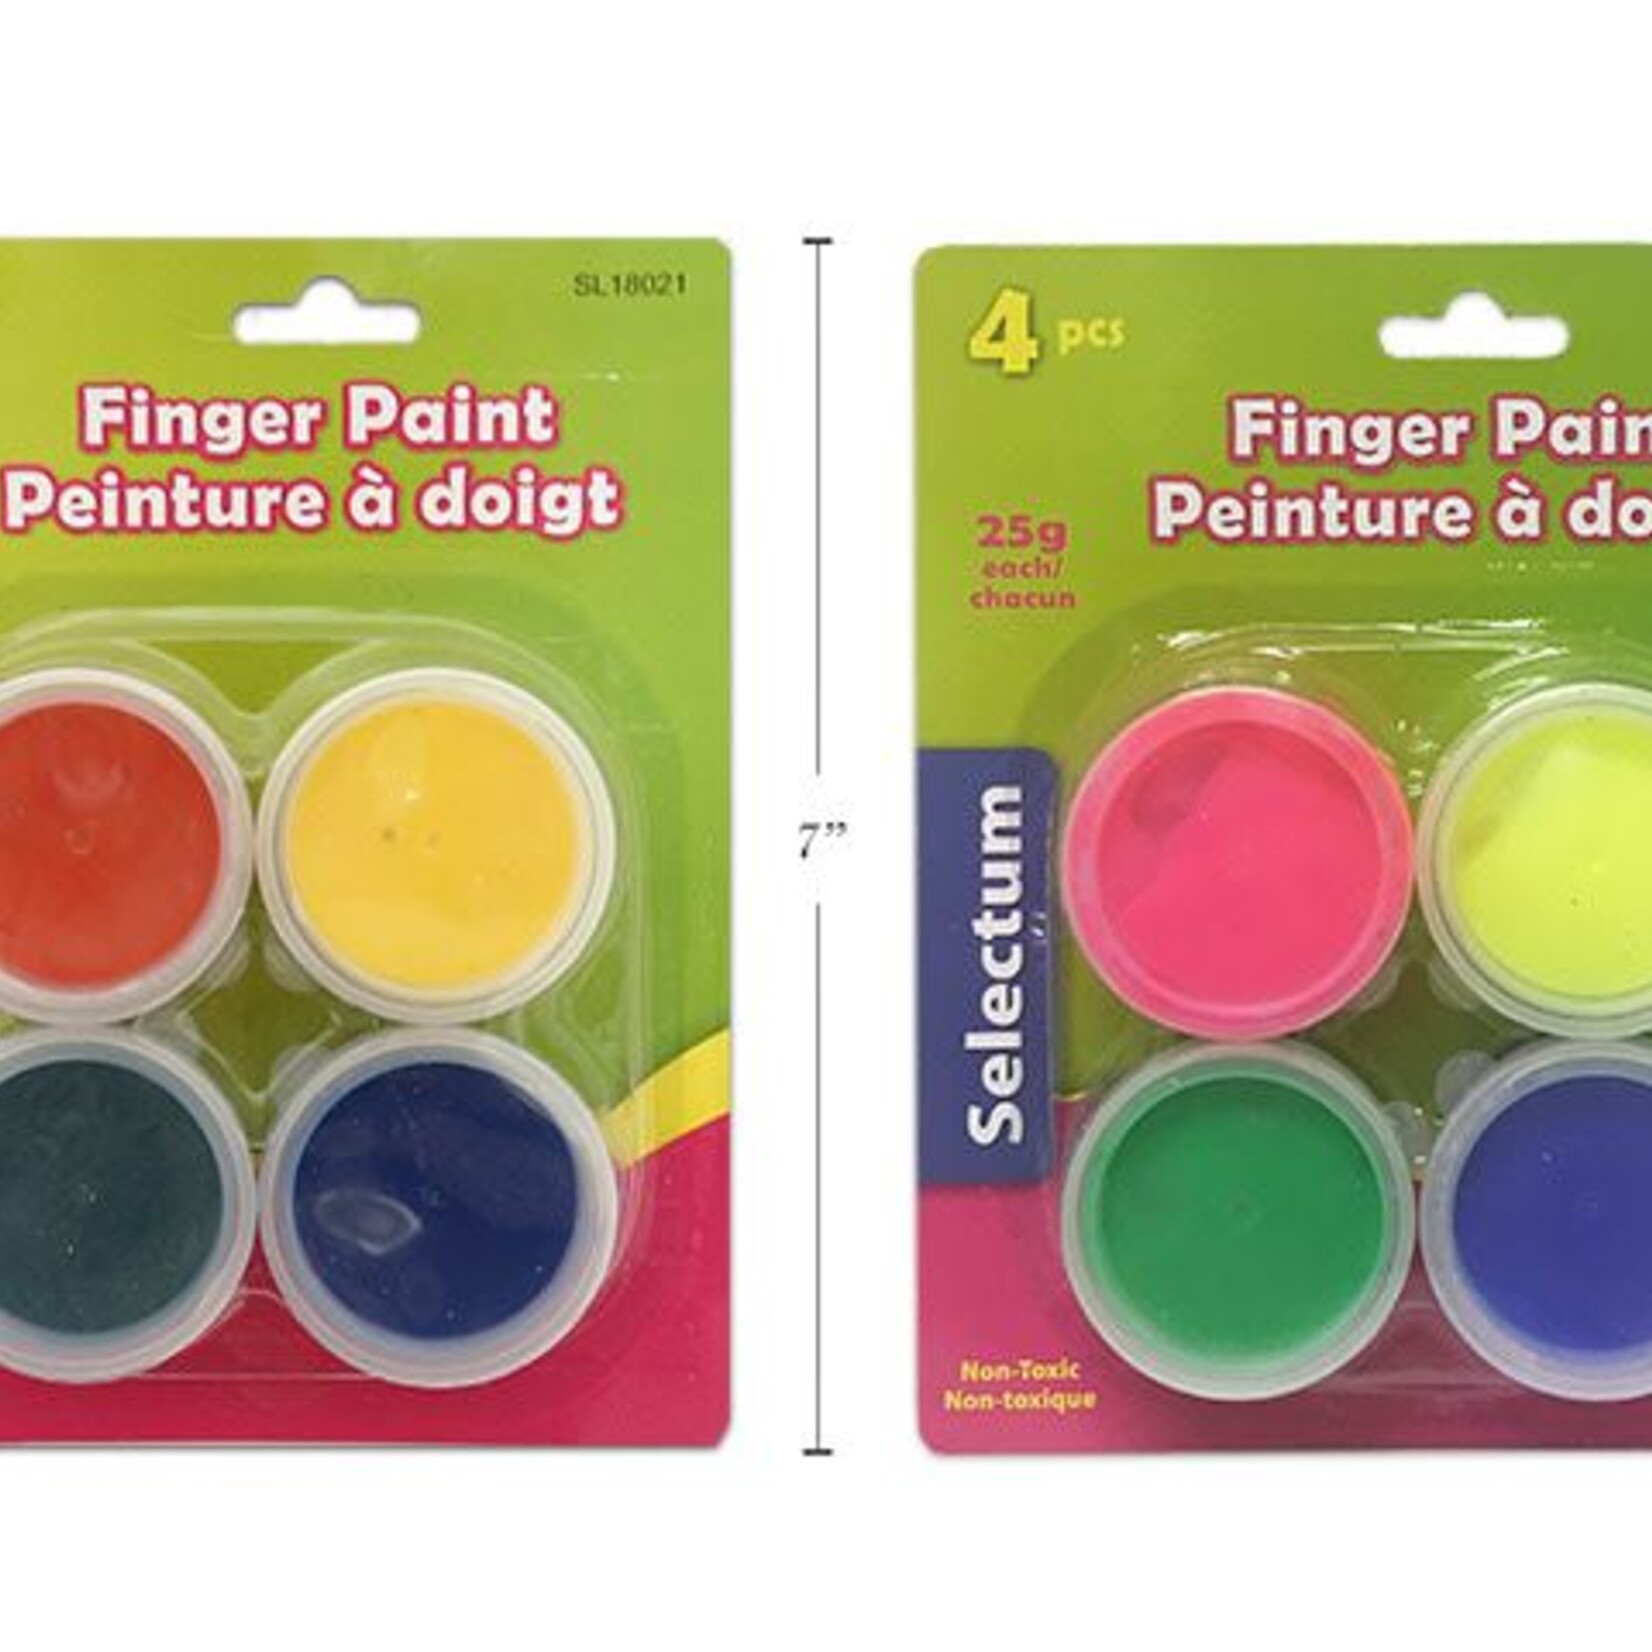 4 Pc. Finger Paints Asst Primary & Neon Colors